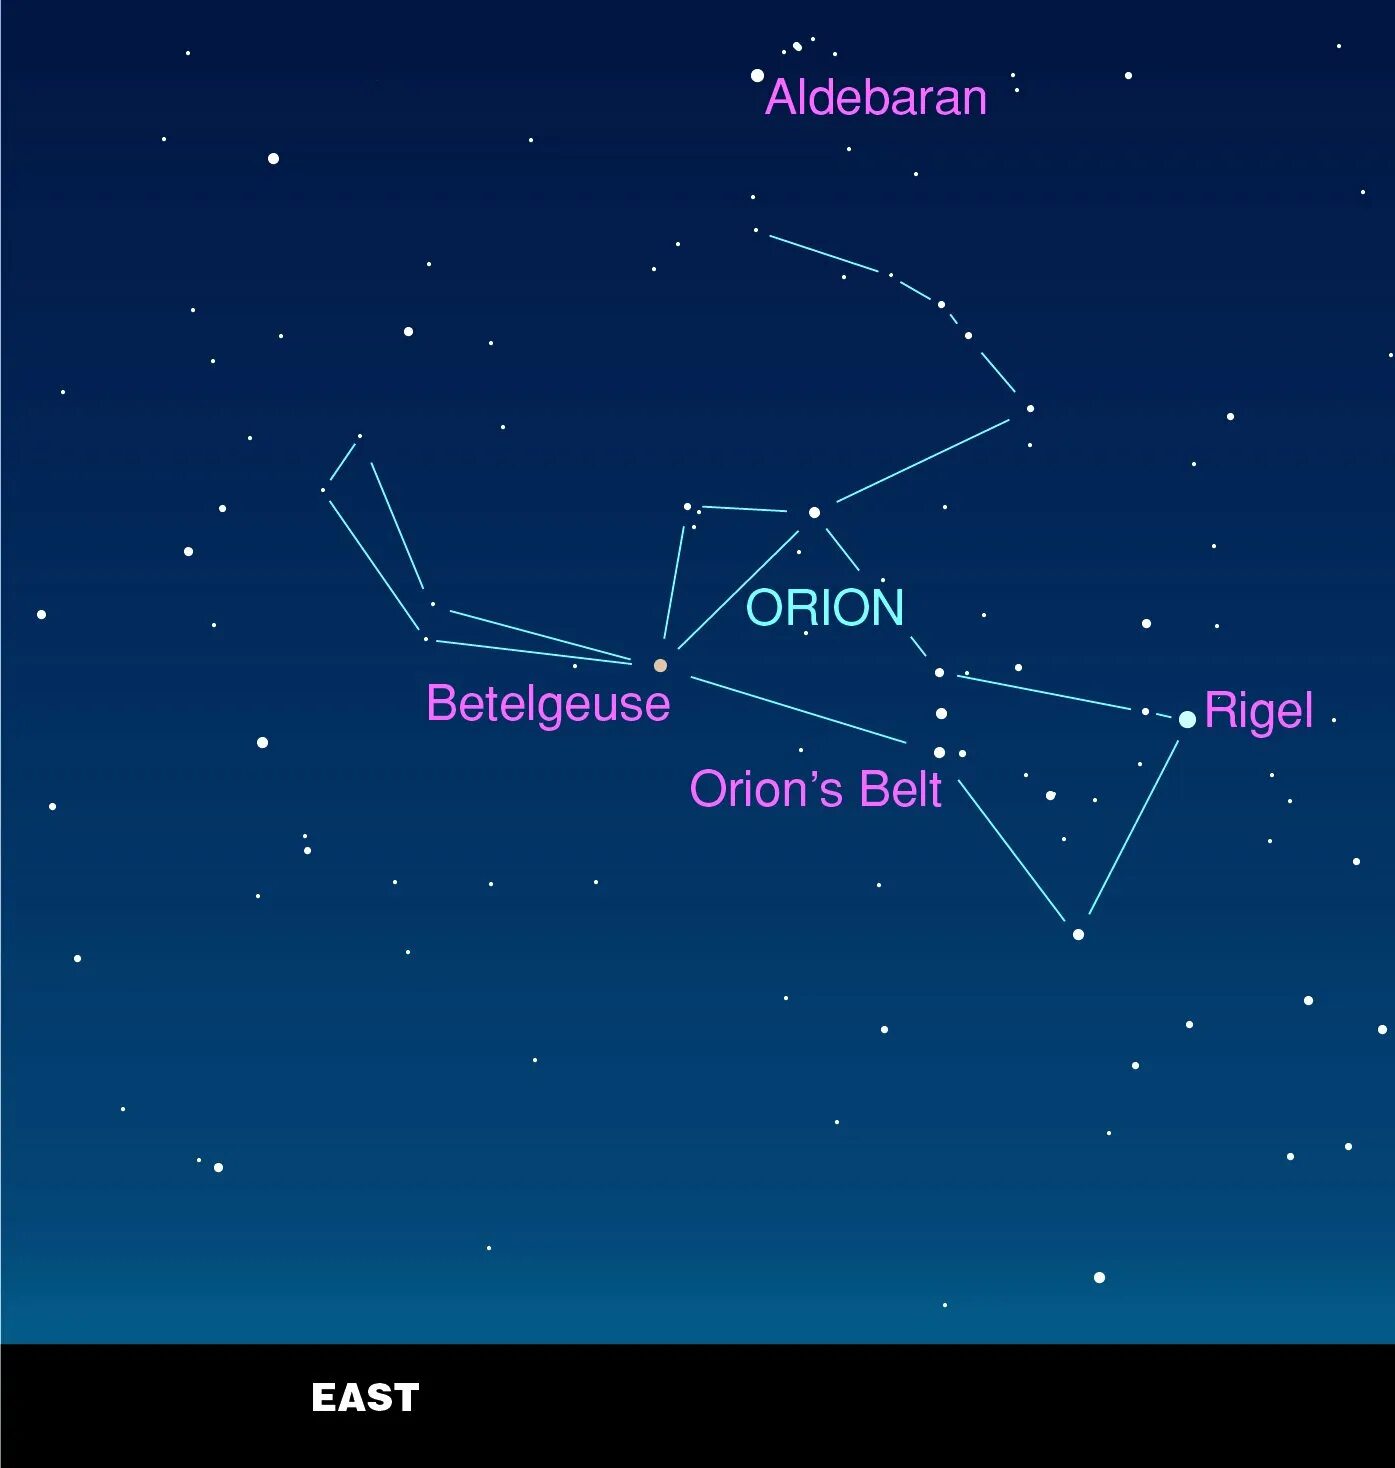 Созвездие альдебаран находится в созвездии. Созвездие Орион Альдебаран. Созвездие Ореон Бетельгейзе. Созвездие Ориона и Плеяды. Альдебаран звезда в созвездии.